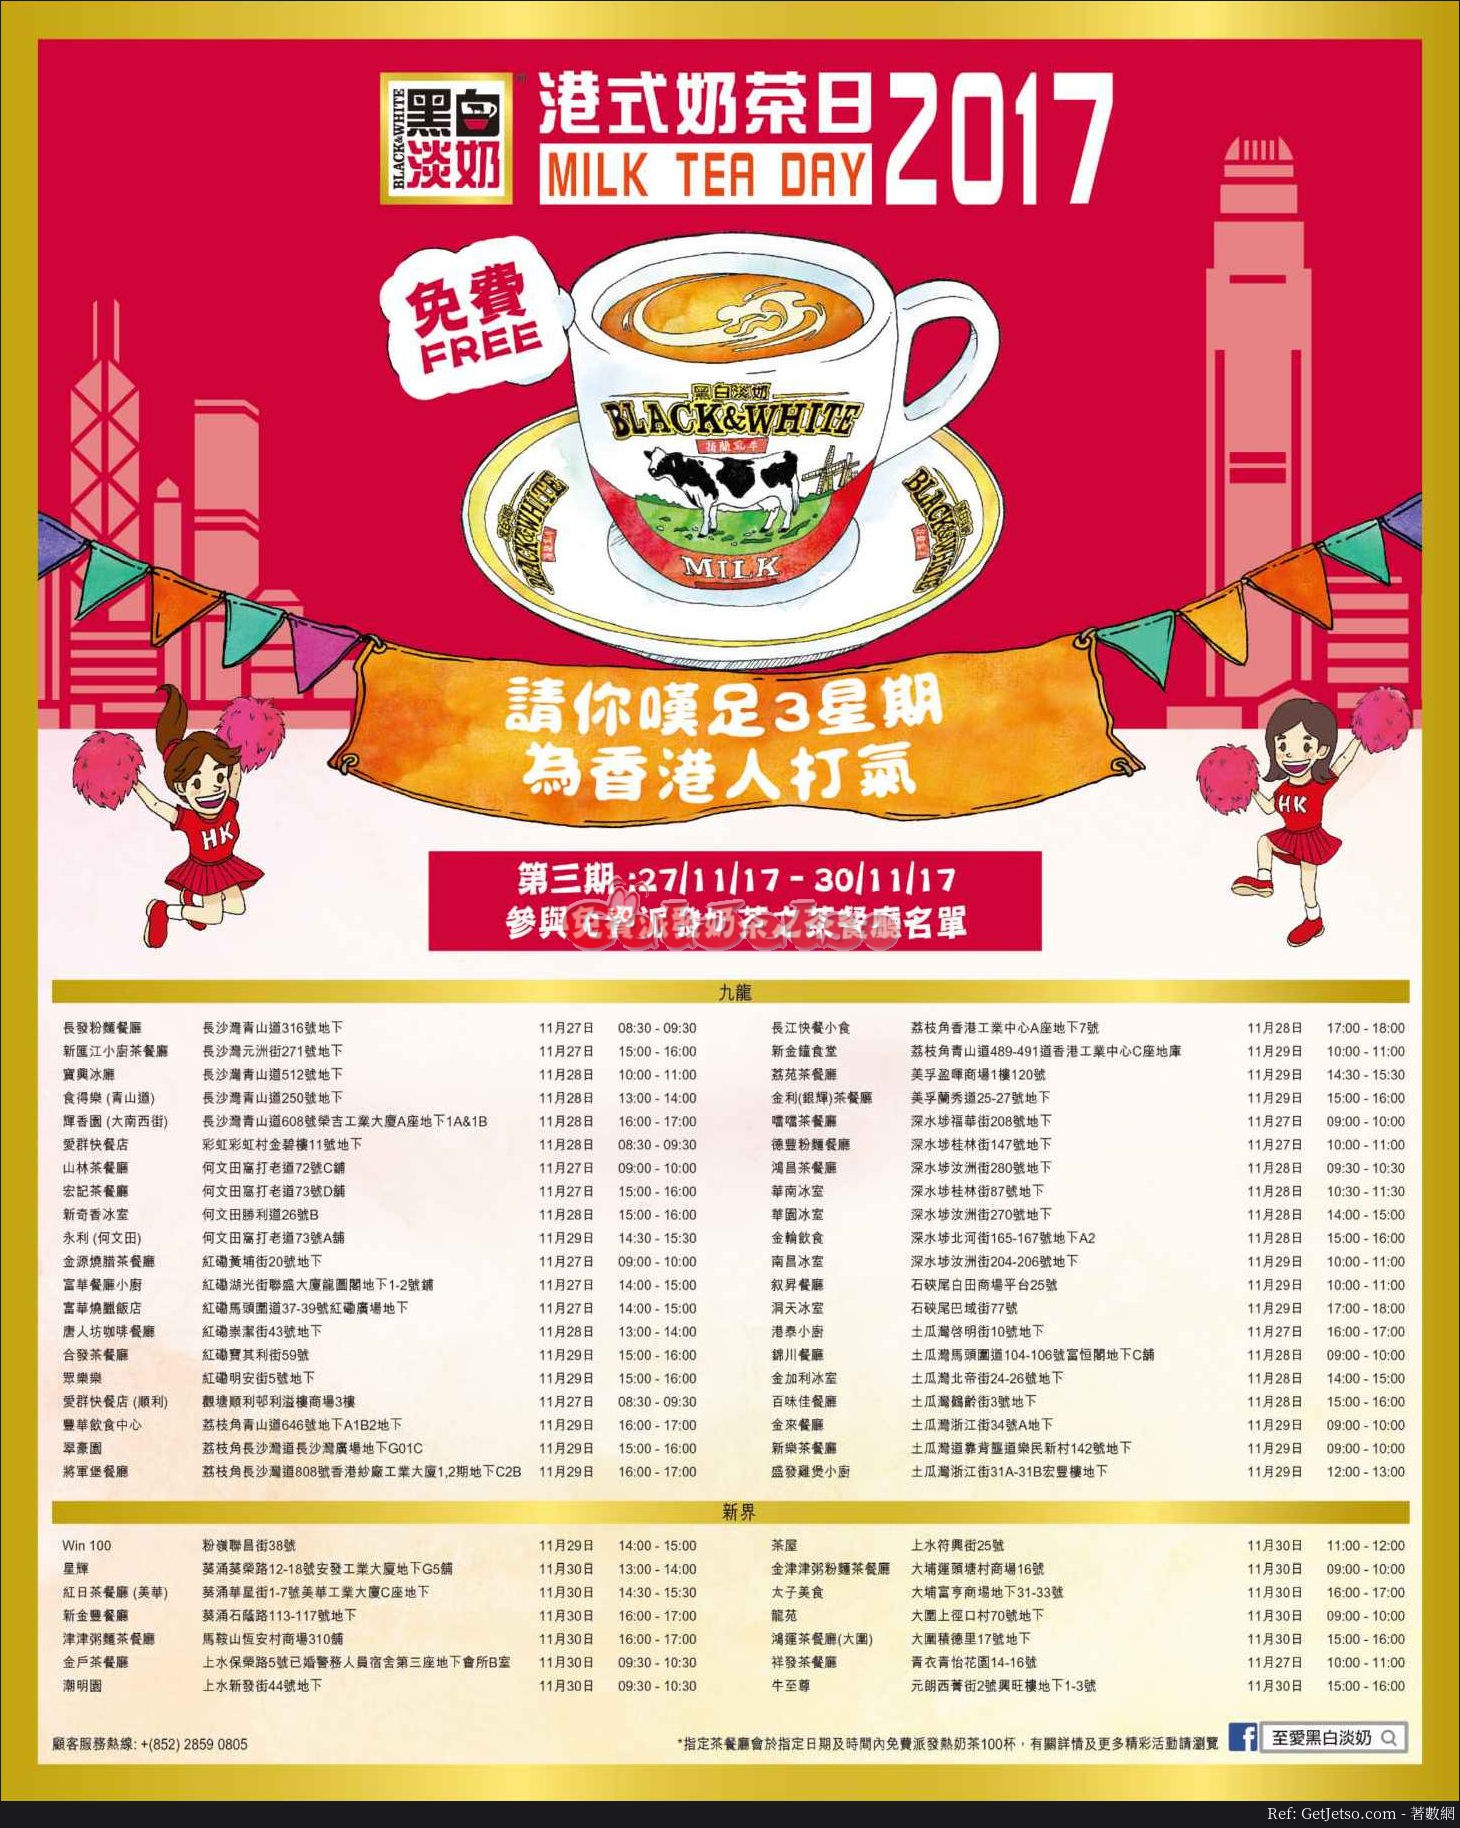 美心MX 免費請你港式熱奶茶優惠(17年11月27-30日)圖片1